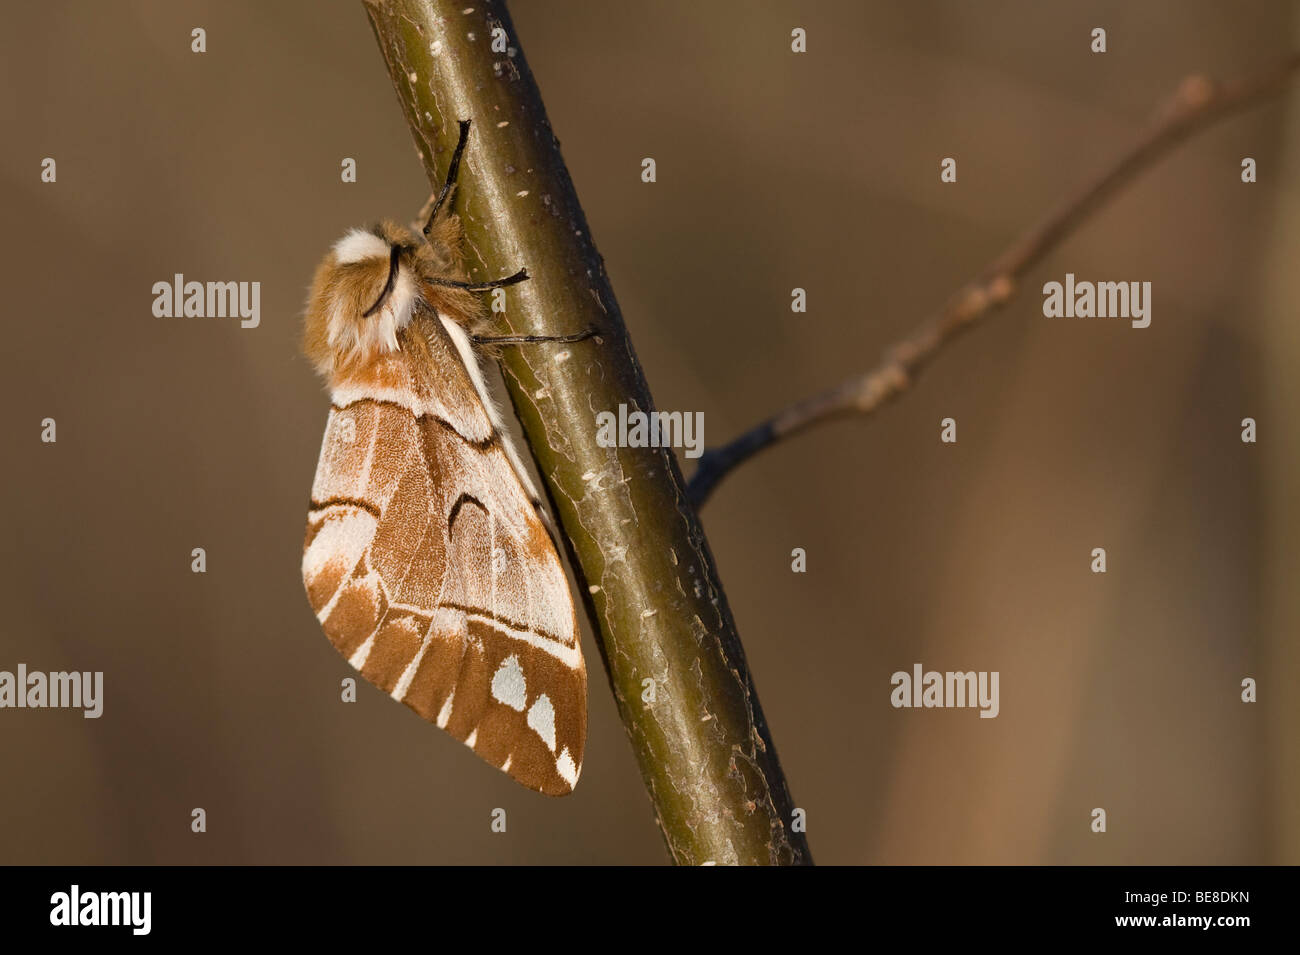 Vrouwtje van de gevlamde vlinder; Female Kentish Glory Stock Photo